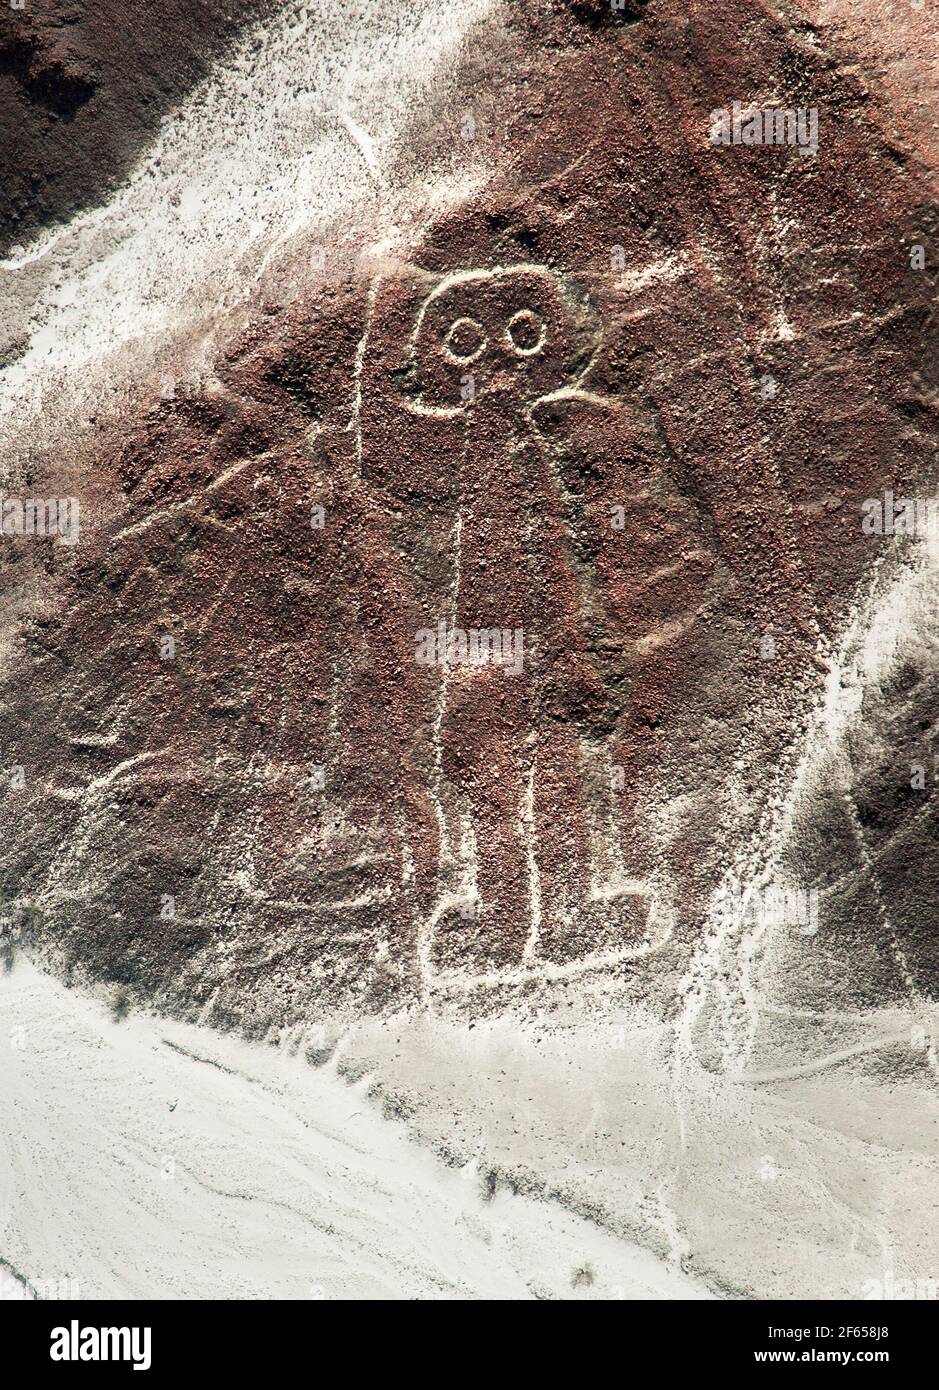 Lo spaceman o l'uomo spaziale, Nazca o Nasca misteriose linee e geoglifi vista aerea, punto di riferimento in Perù Foto Stock